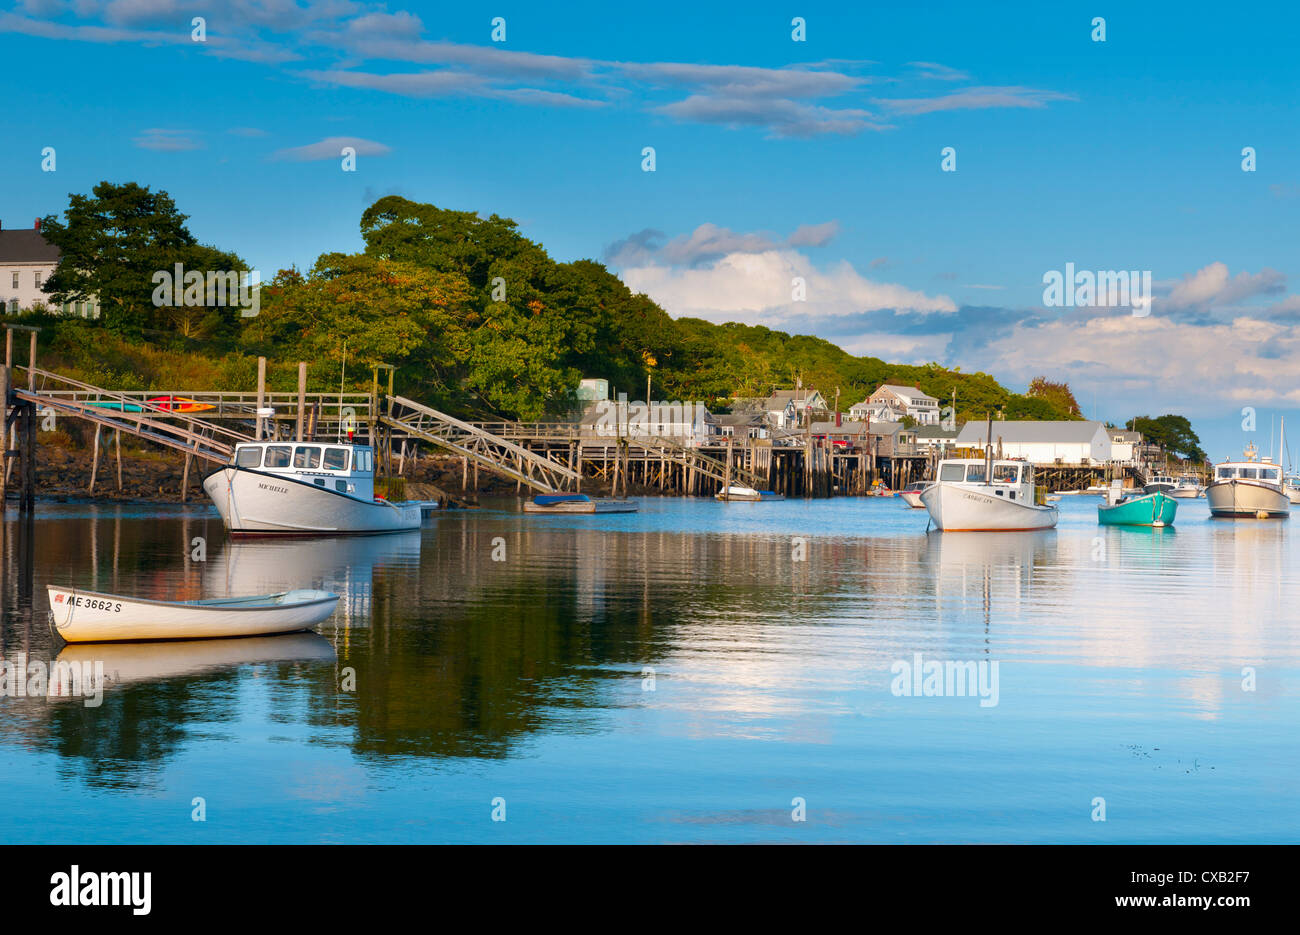 Bateaux de pêche au homard et de jetées, New Harbour, péninsule Pemaquid, le Maine, la Nouvelle Angleterre, États-Unis d'Amérique, Amérique du Nord Banque D'Images